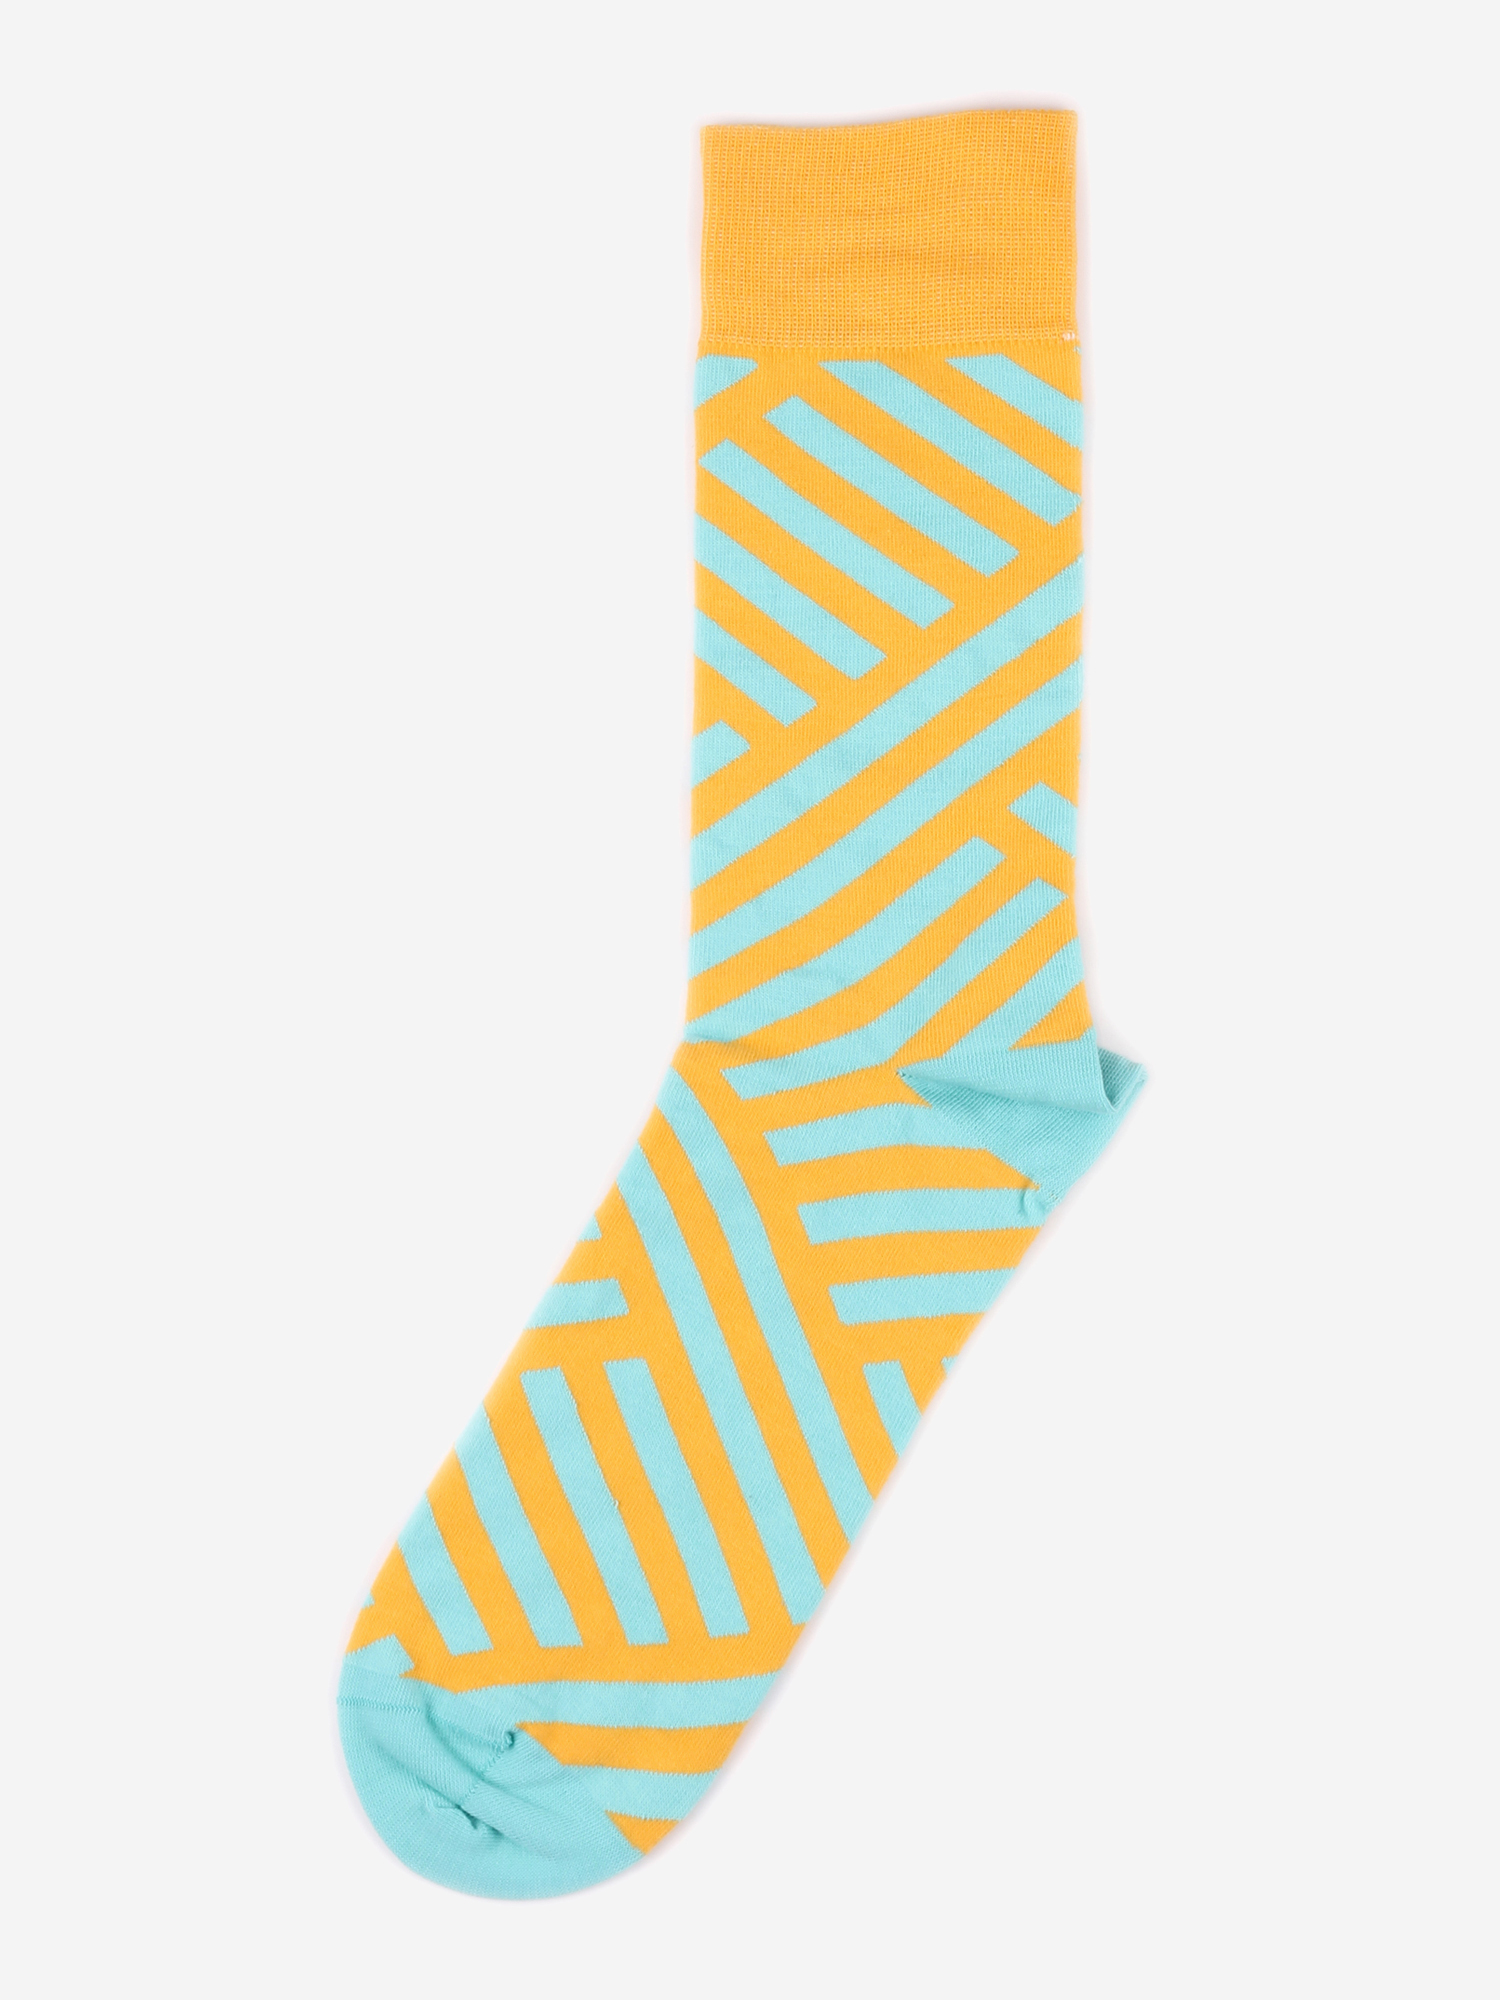 Дизайнерские носки Burning Heels - Diagonal Stripes - Yellow/Blue, Желтый